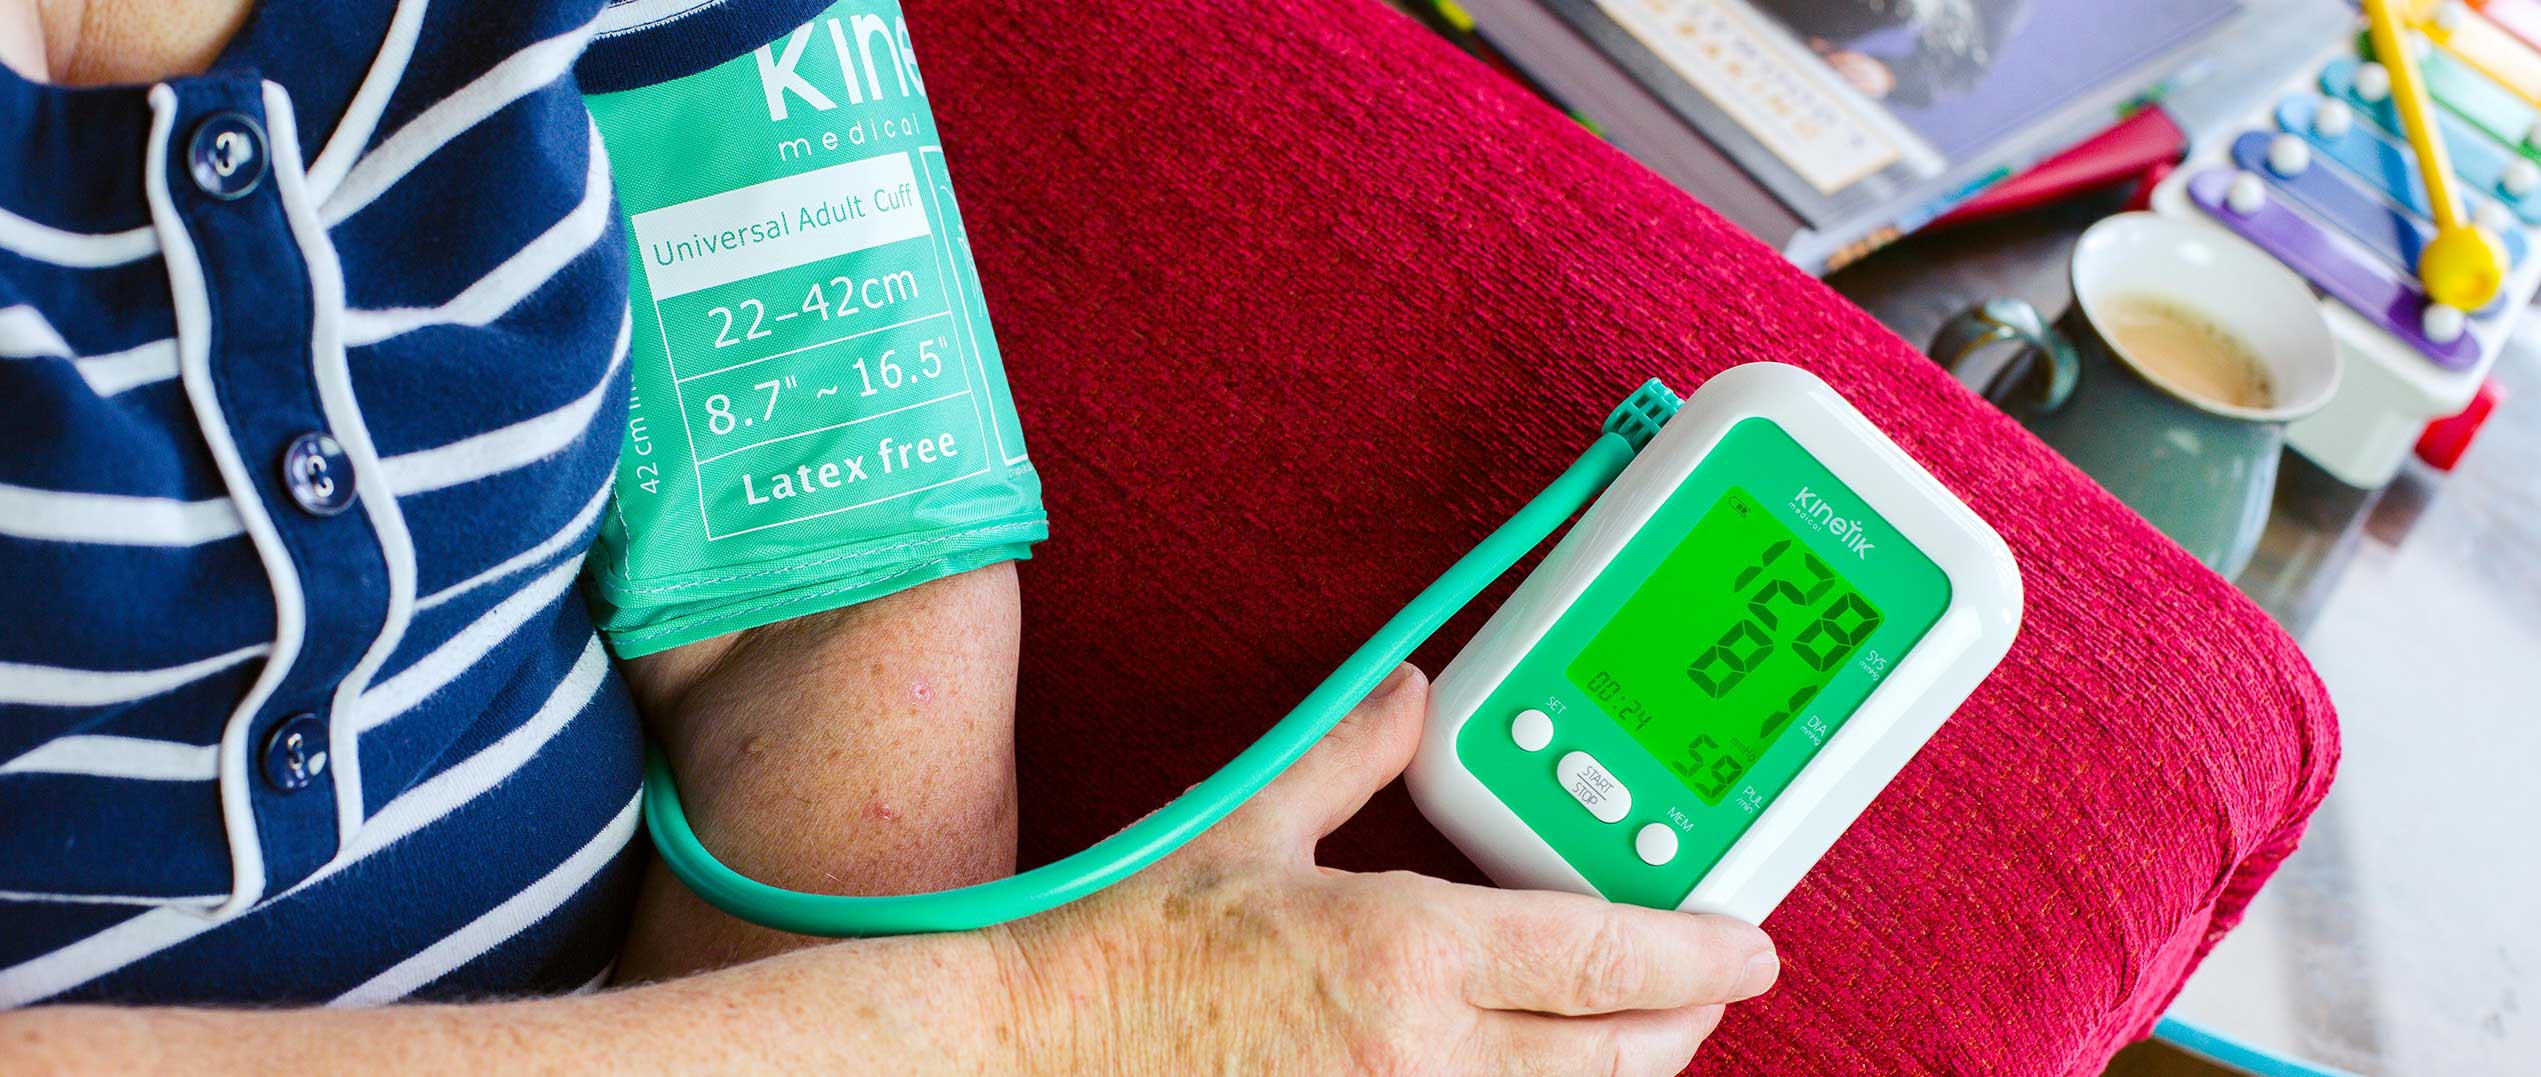 Vérnyomás mérés otthon: így végezze helyesen!